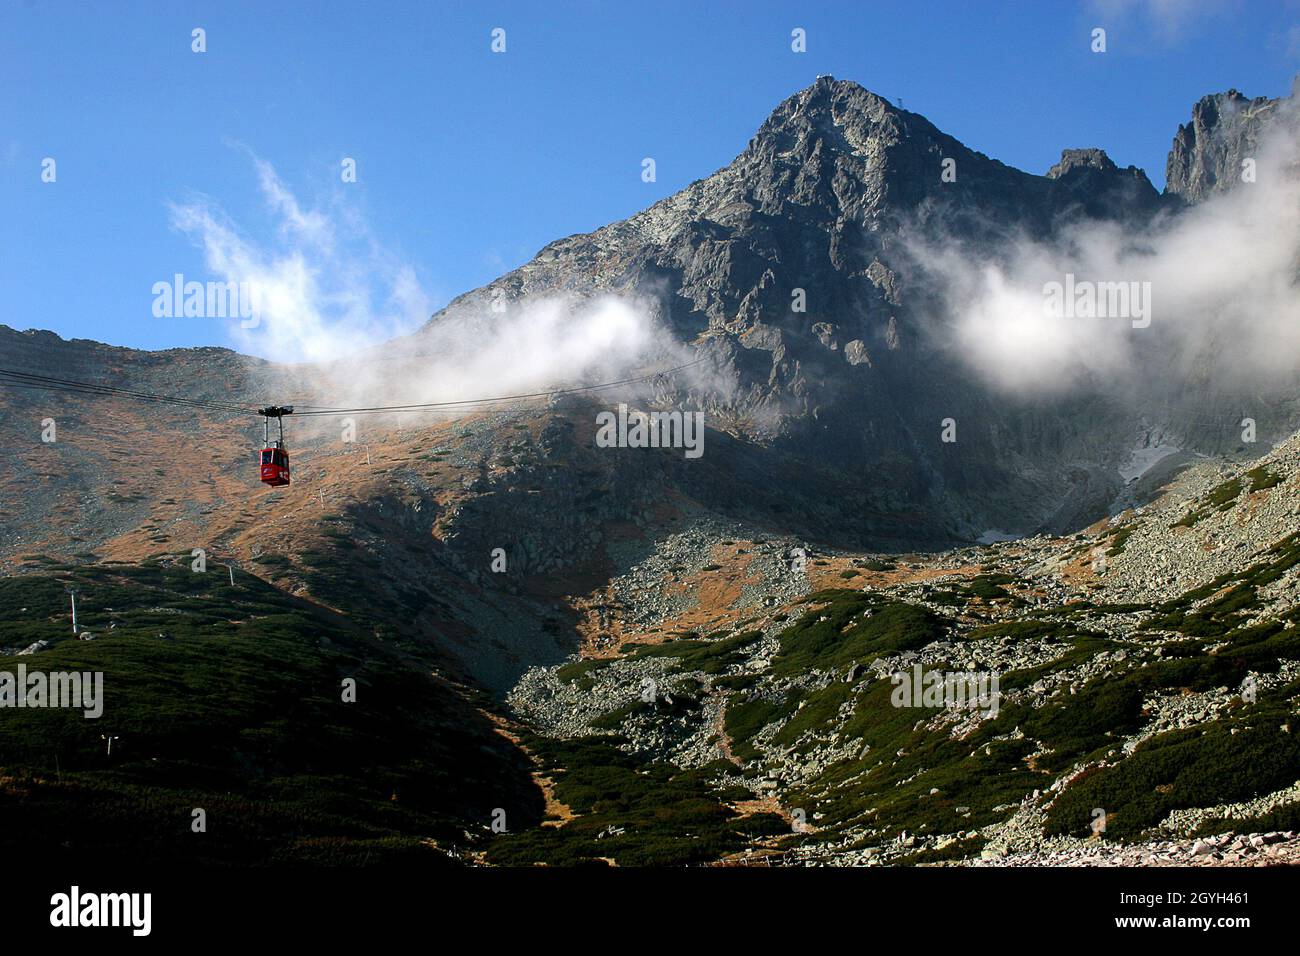 Lomnicky stit, High Tatras Stock Photo